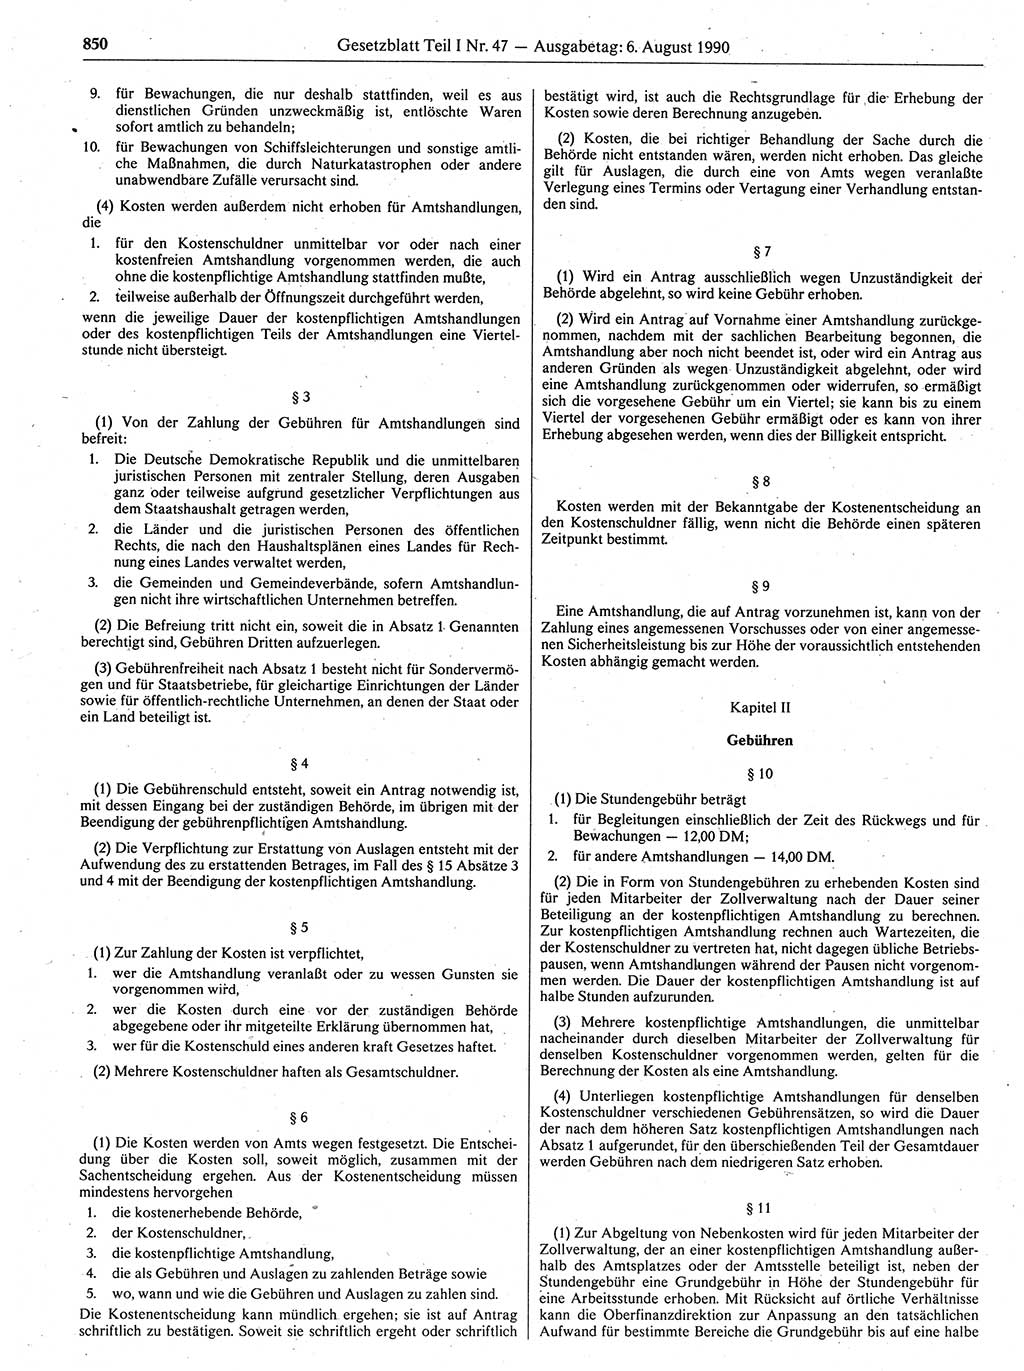 Gesetzblatt (GBl.) der Deutschen Demokratischen Republik (DDR) Teil Ⅰ 1990, Seite 850 (GBl. DDR Ⅰ 1990, S. 850)